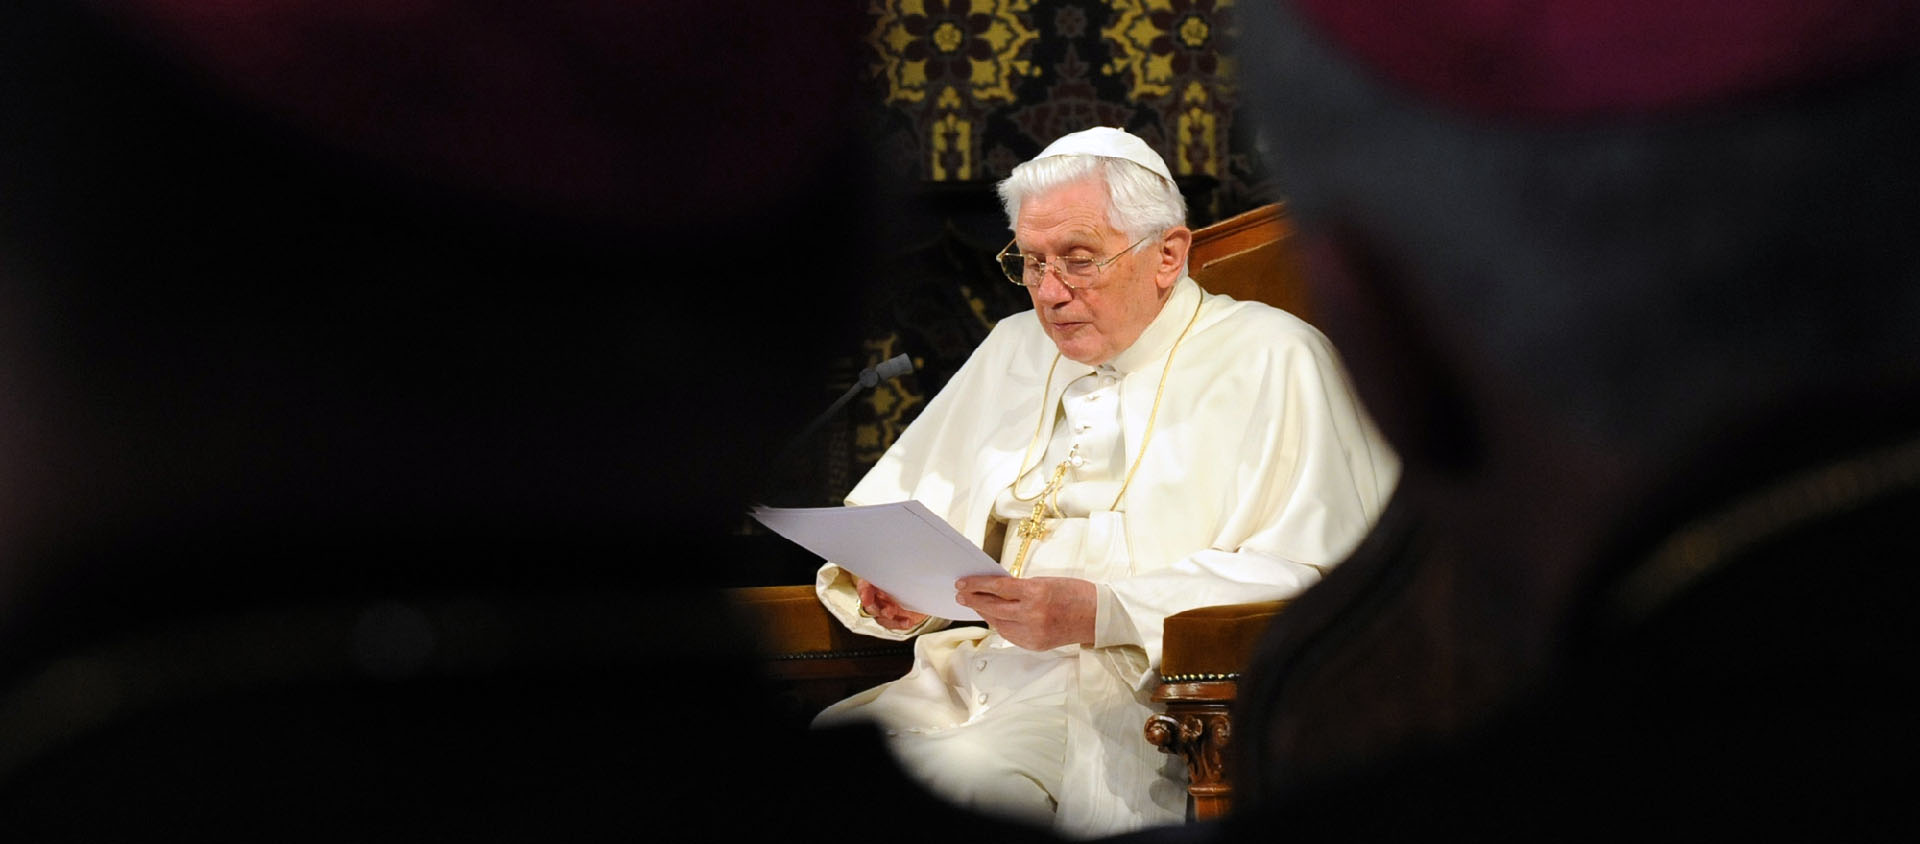 Quelques unes des citations qui ont fait sensation durant le pontificat de Benoît XVI | Flickr/ Mazur/www.thepapalvisit.org.uk/ CC BY-NC 2.0